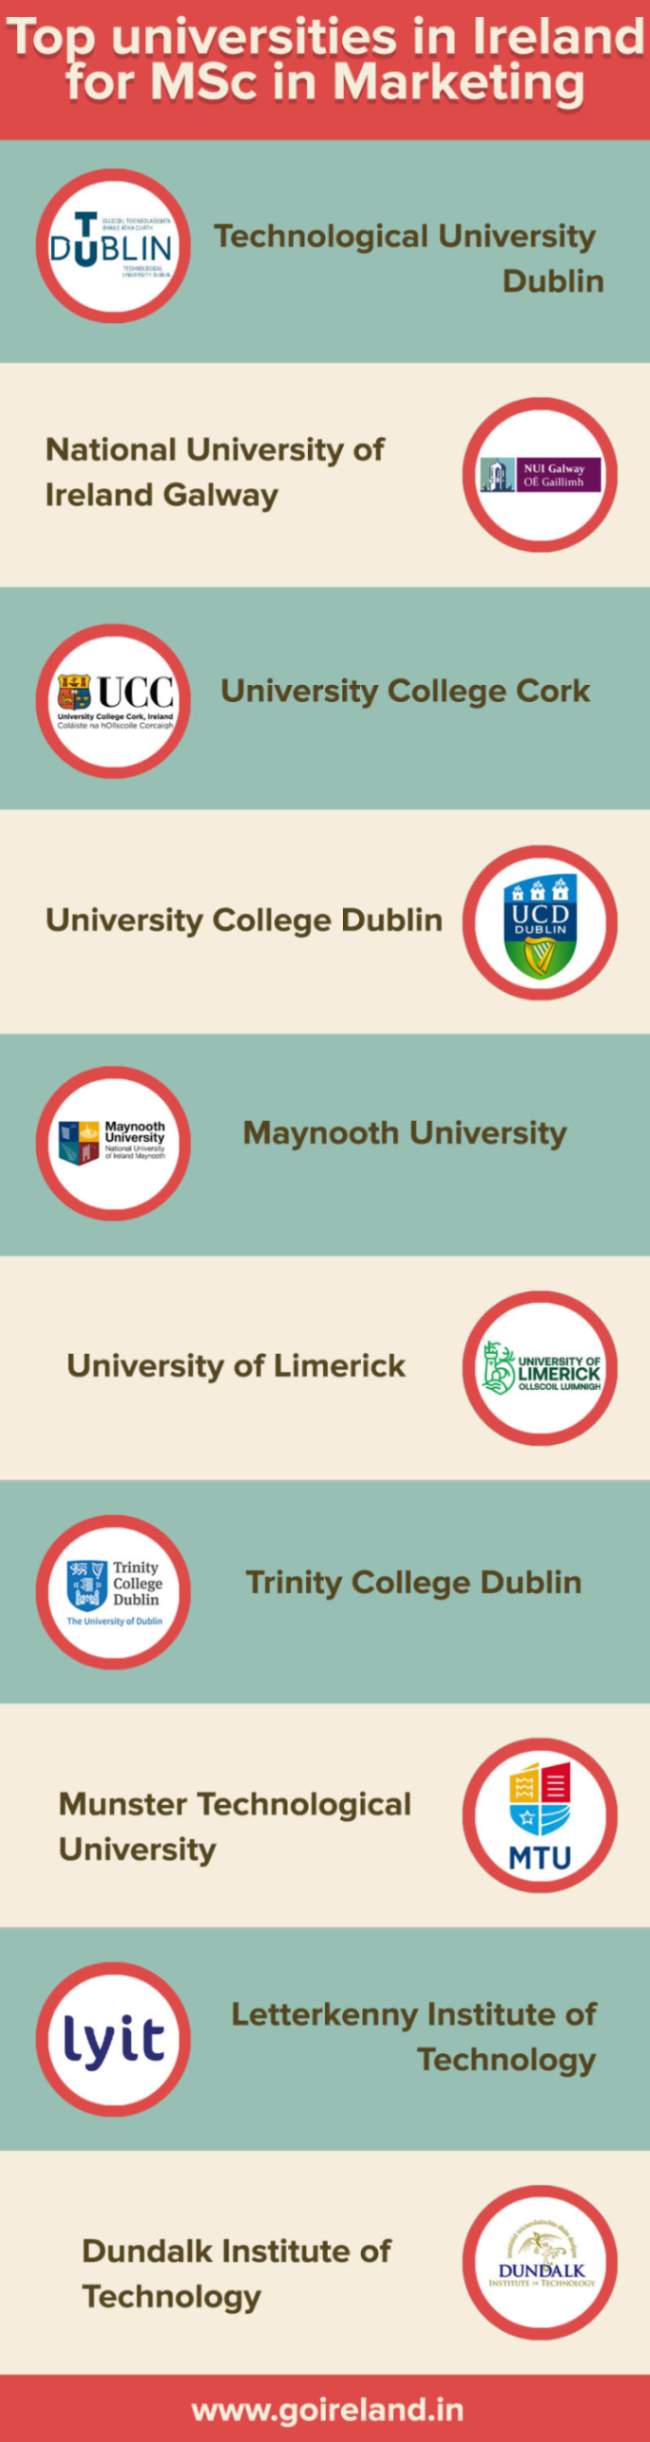 Top Universities in Ireland for MSc in Marketing